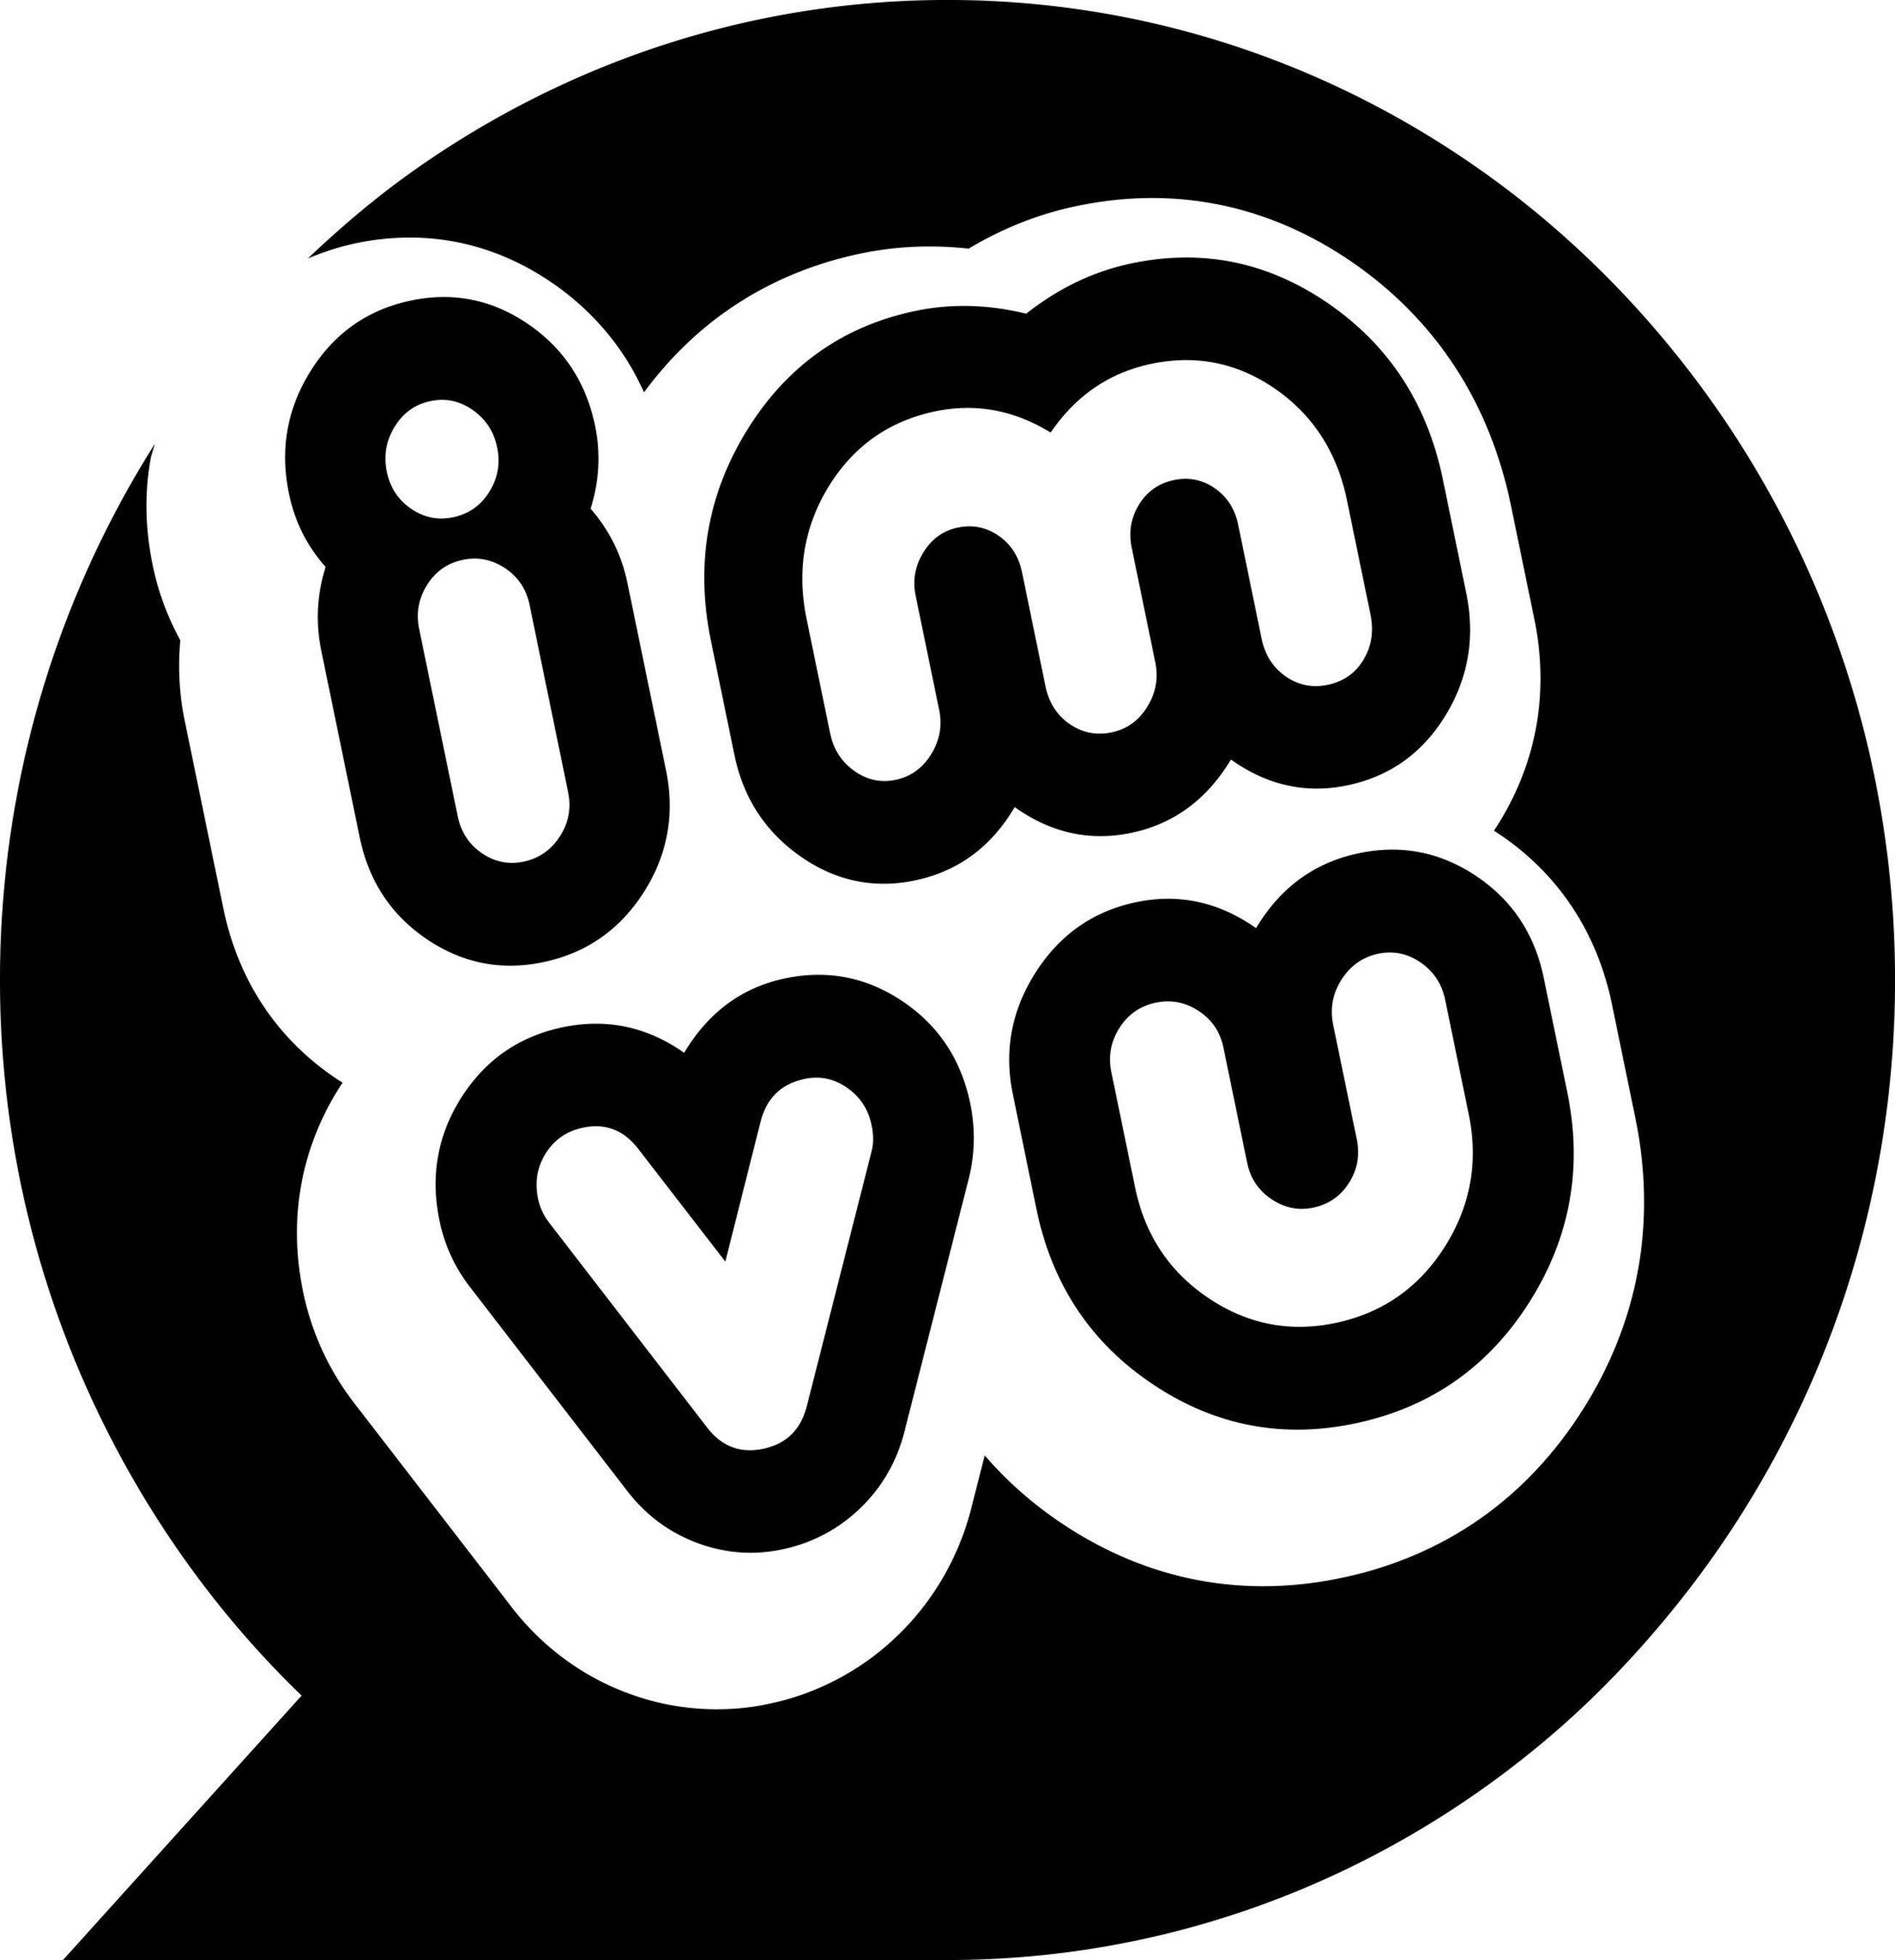 IMVU Logo - IMVU Named One of the 